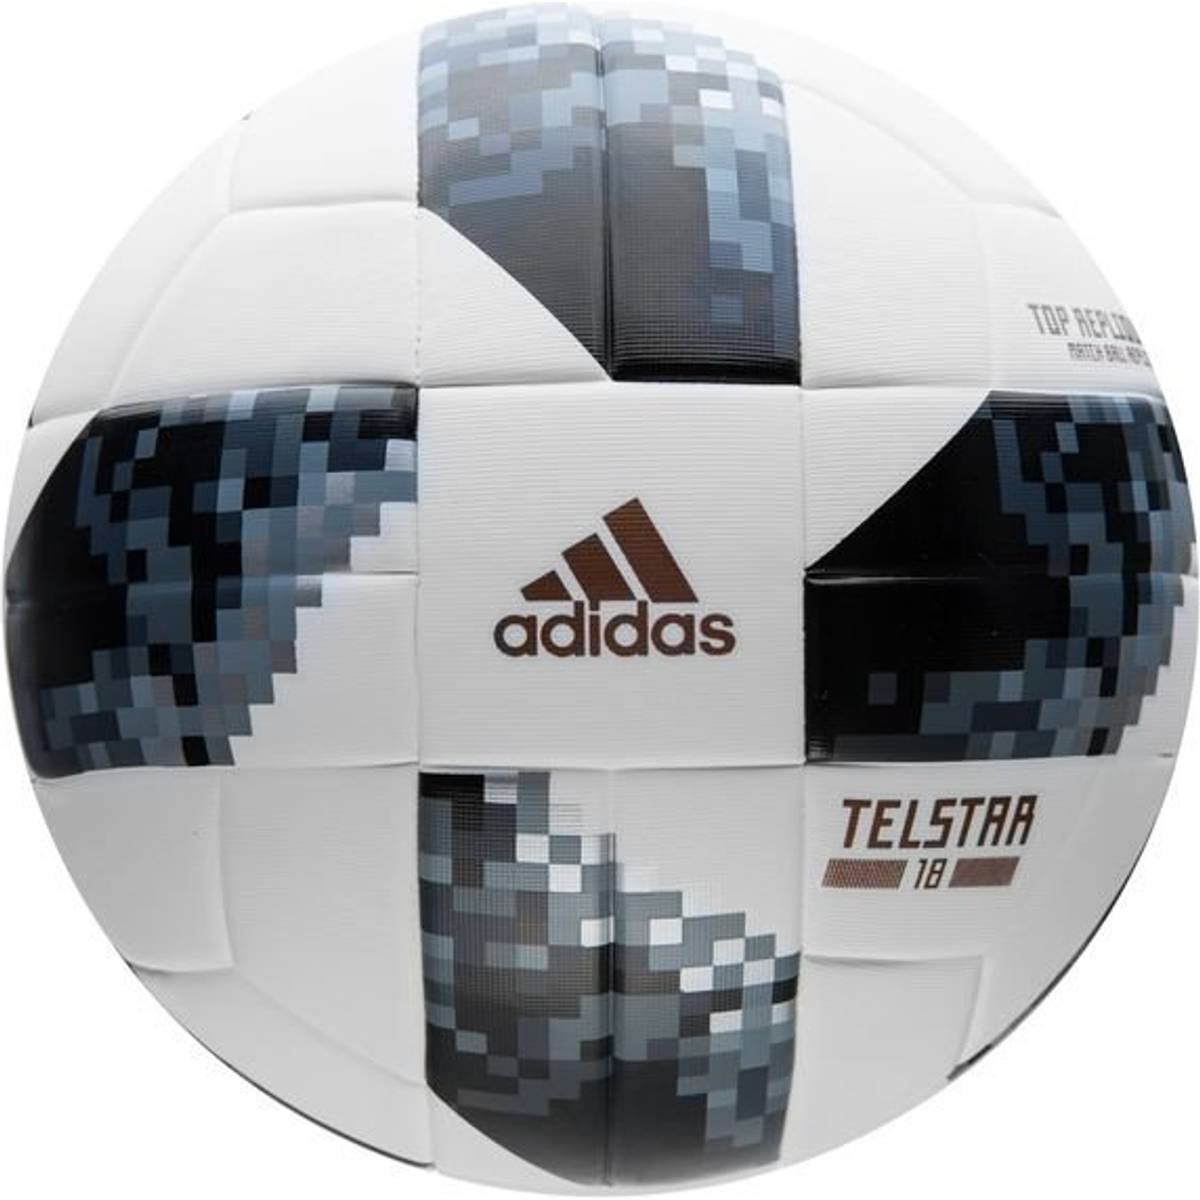 Ball adidas Telstar 18 Top Glider CE8097 size 5